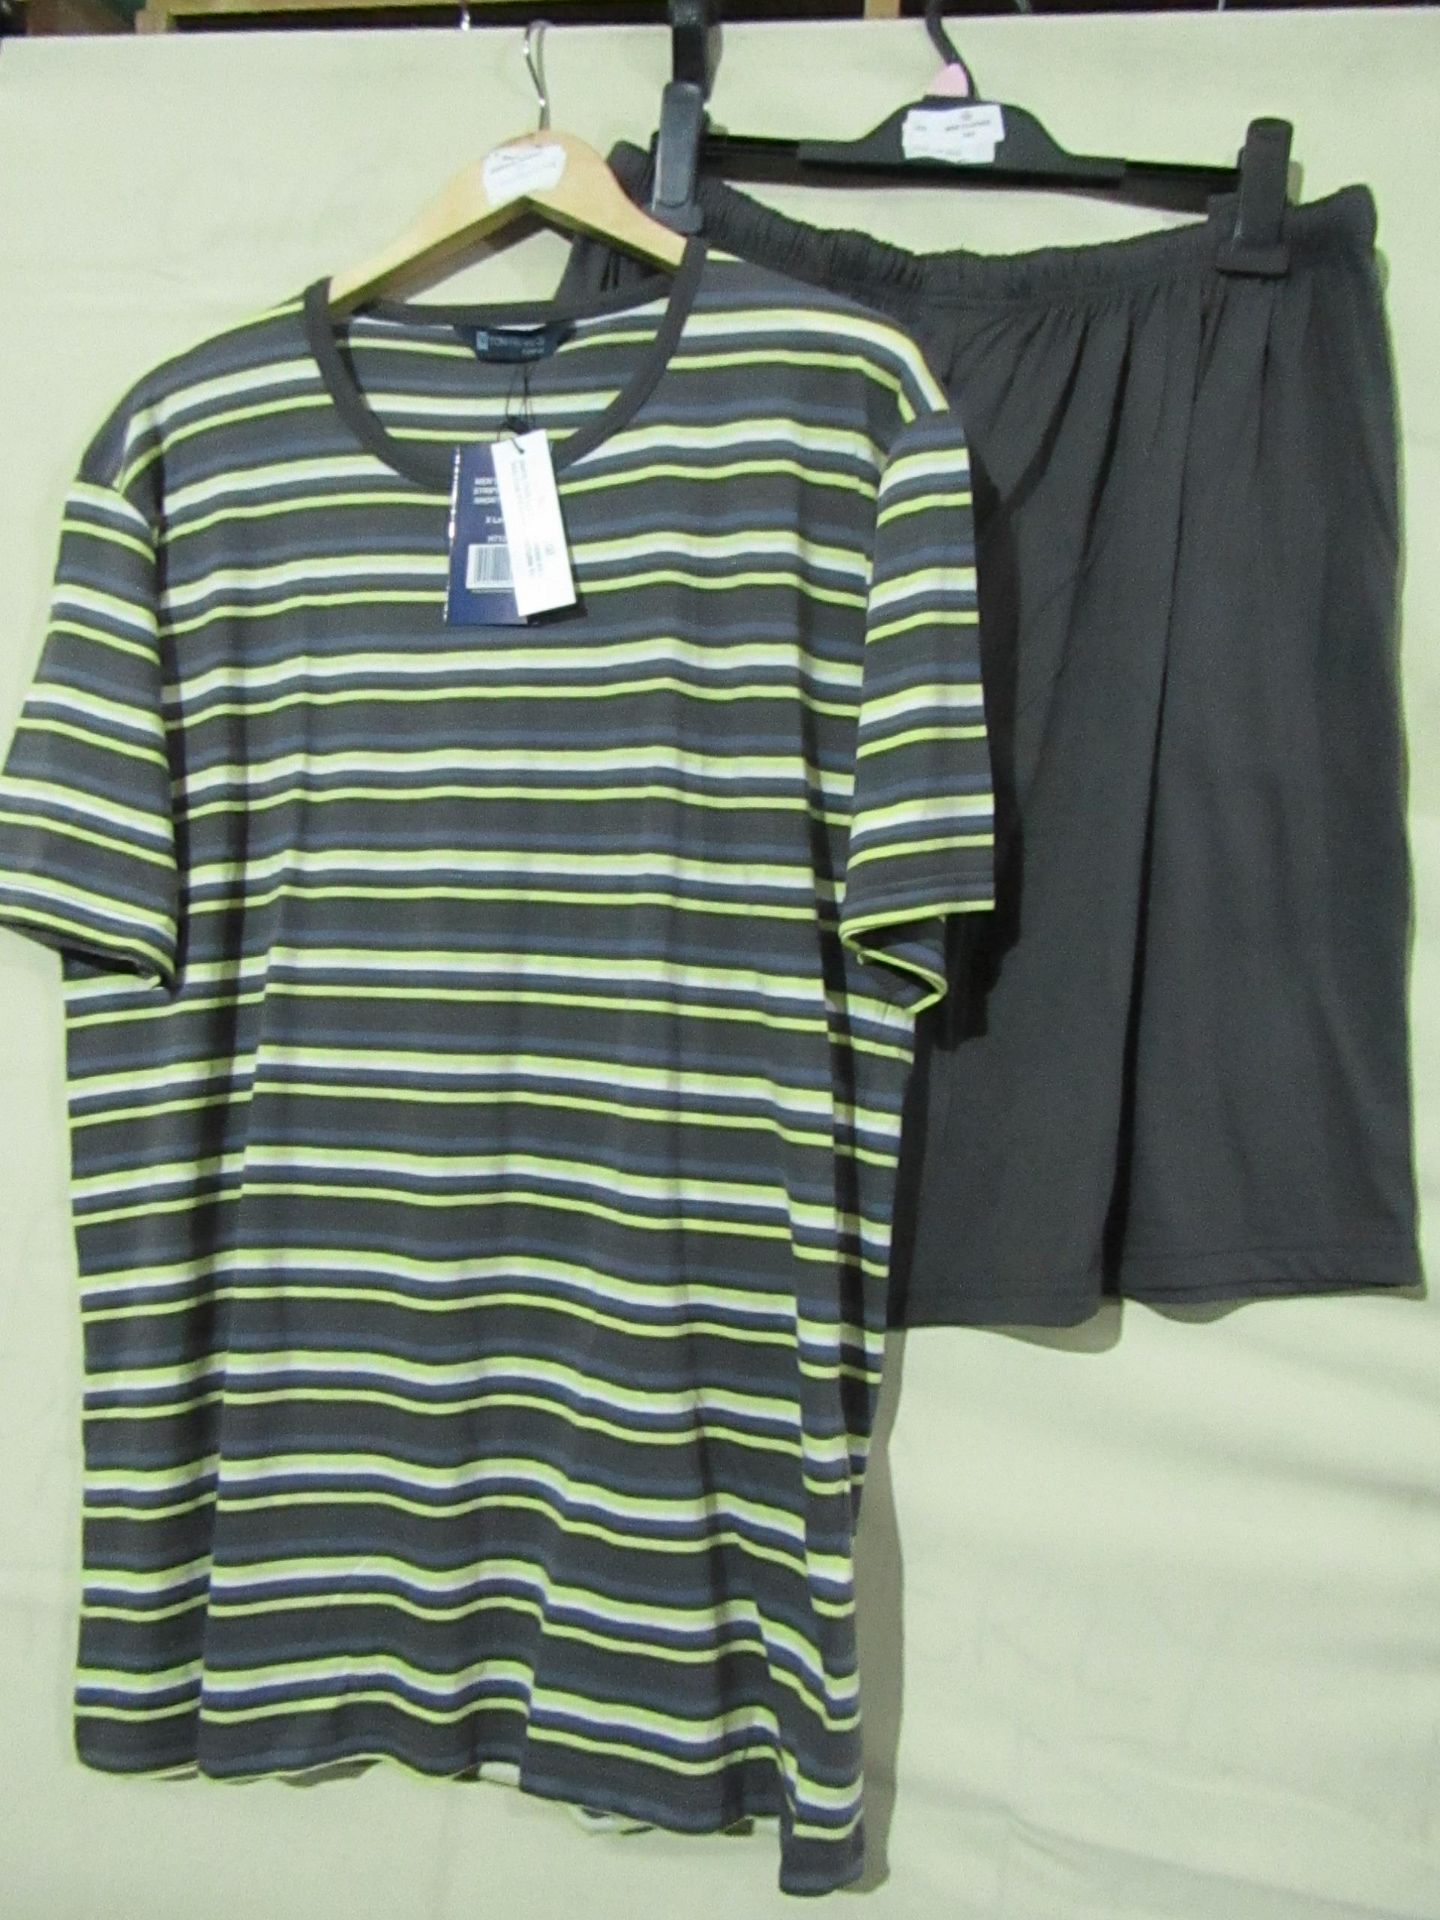 Tom Franks Mens Striped Top & Short Pyjama Set Size Large New & Packaged